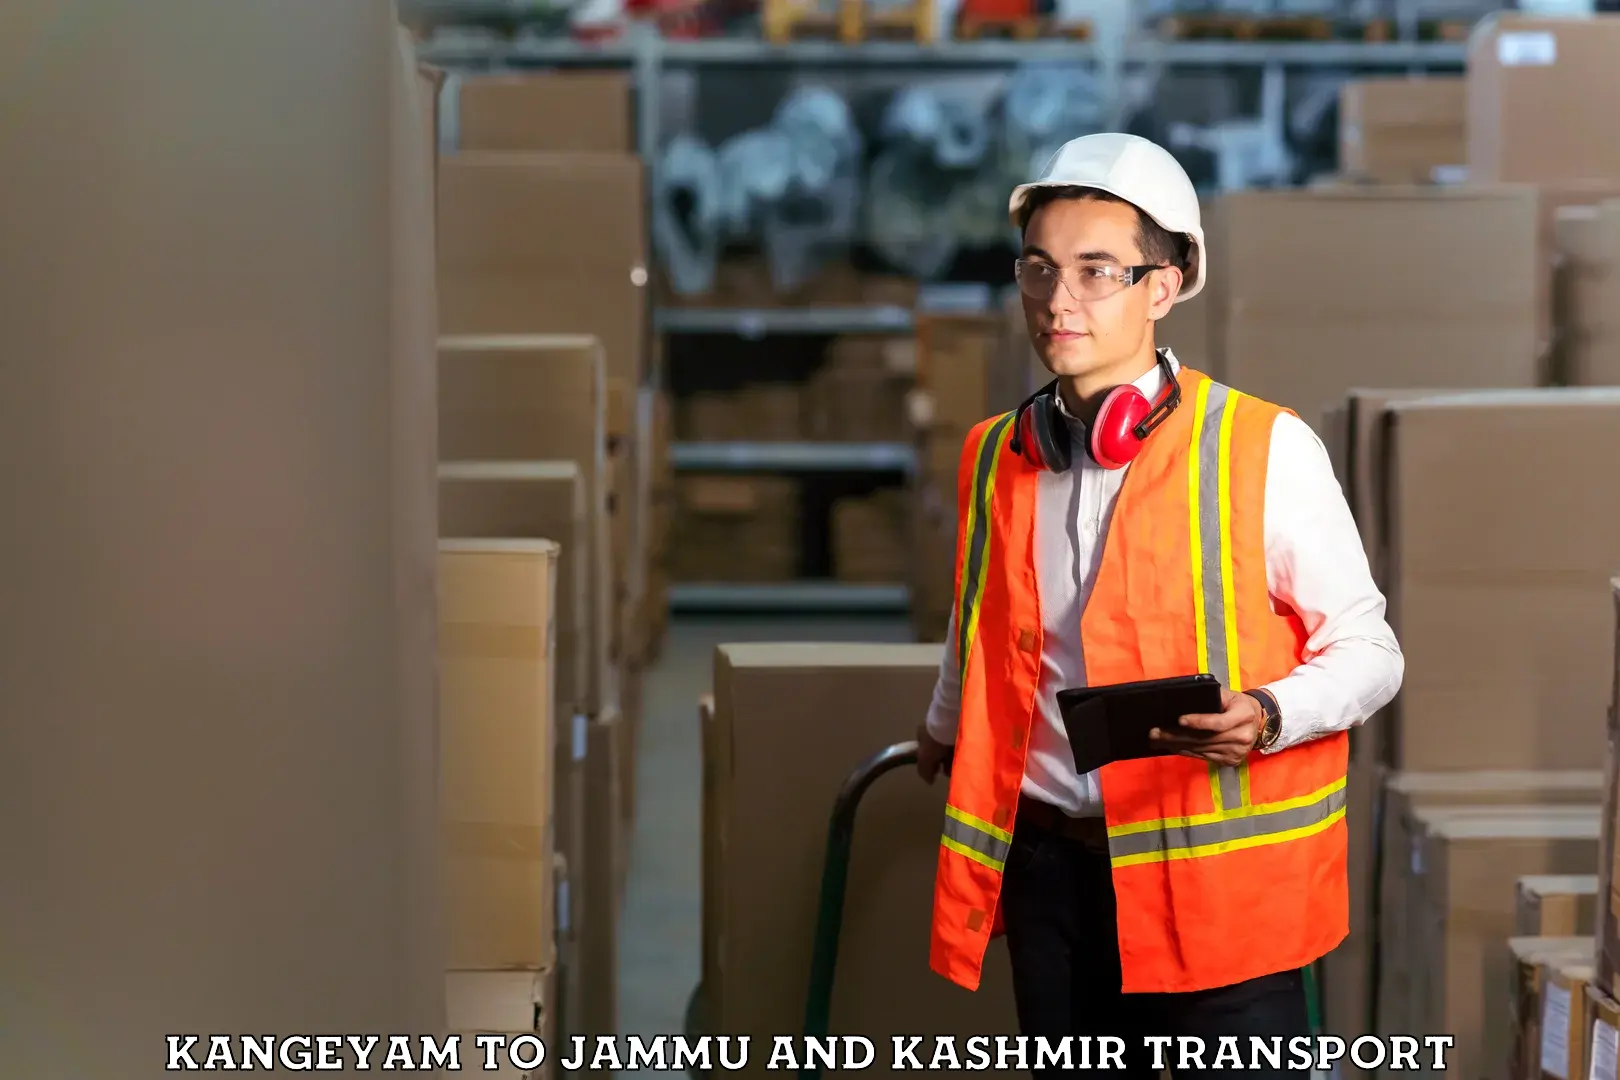 Express transport services Kangeyam to Jammu